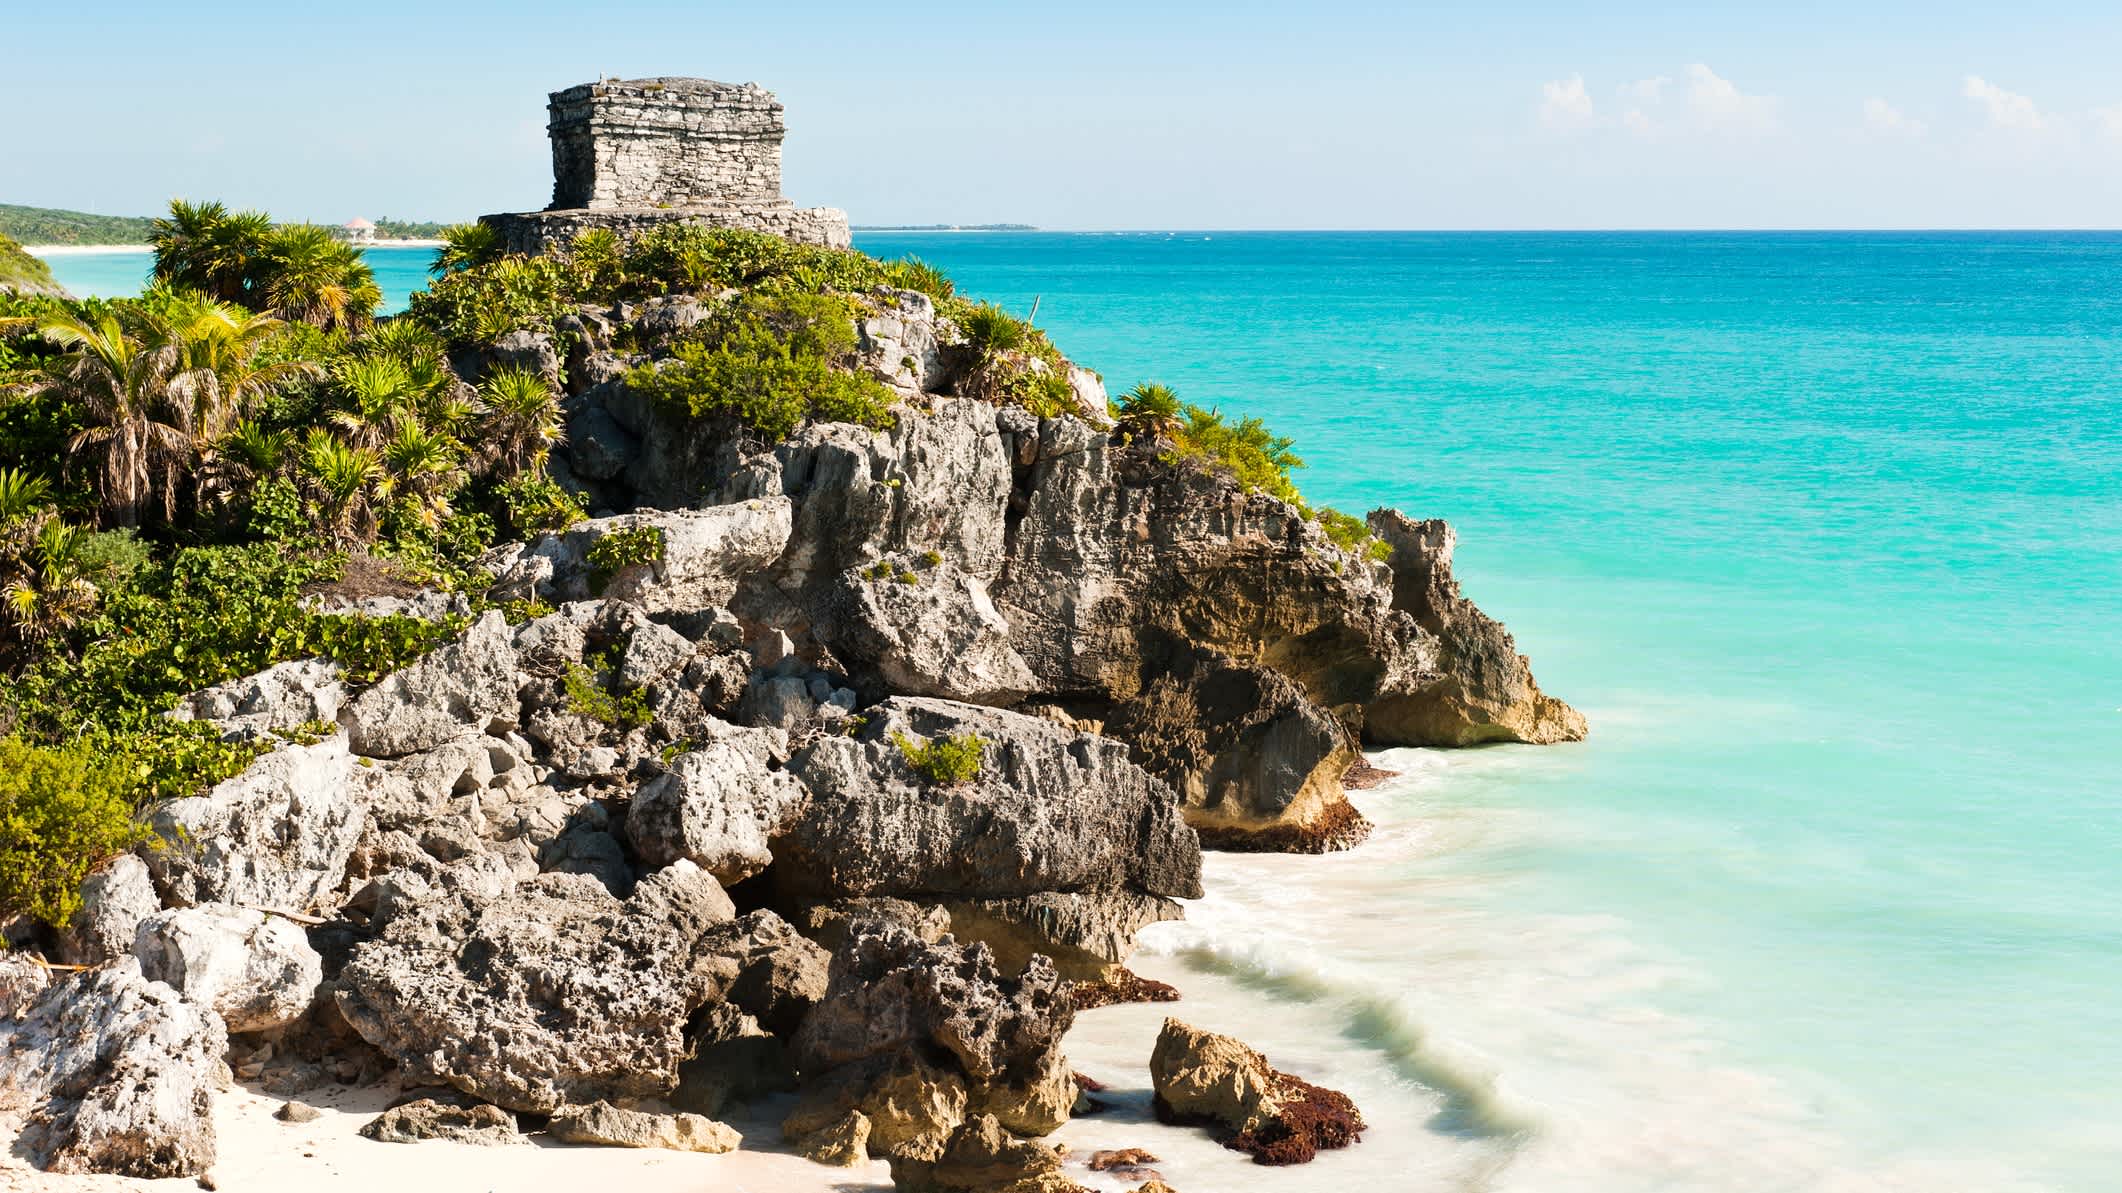 Ruinen der alten Maya-Stadt Tulum in Mexiko, aufgenommen an einem warmen Sommertag mit klarem blauen Himmel und t�ürkisfarbenem Karibikmeer.